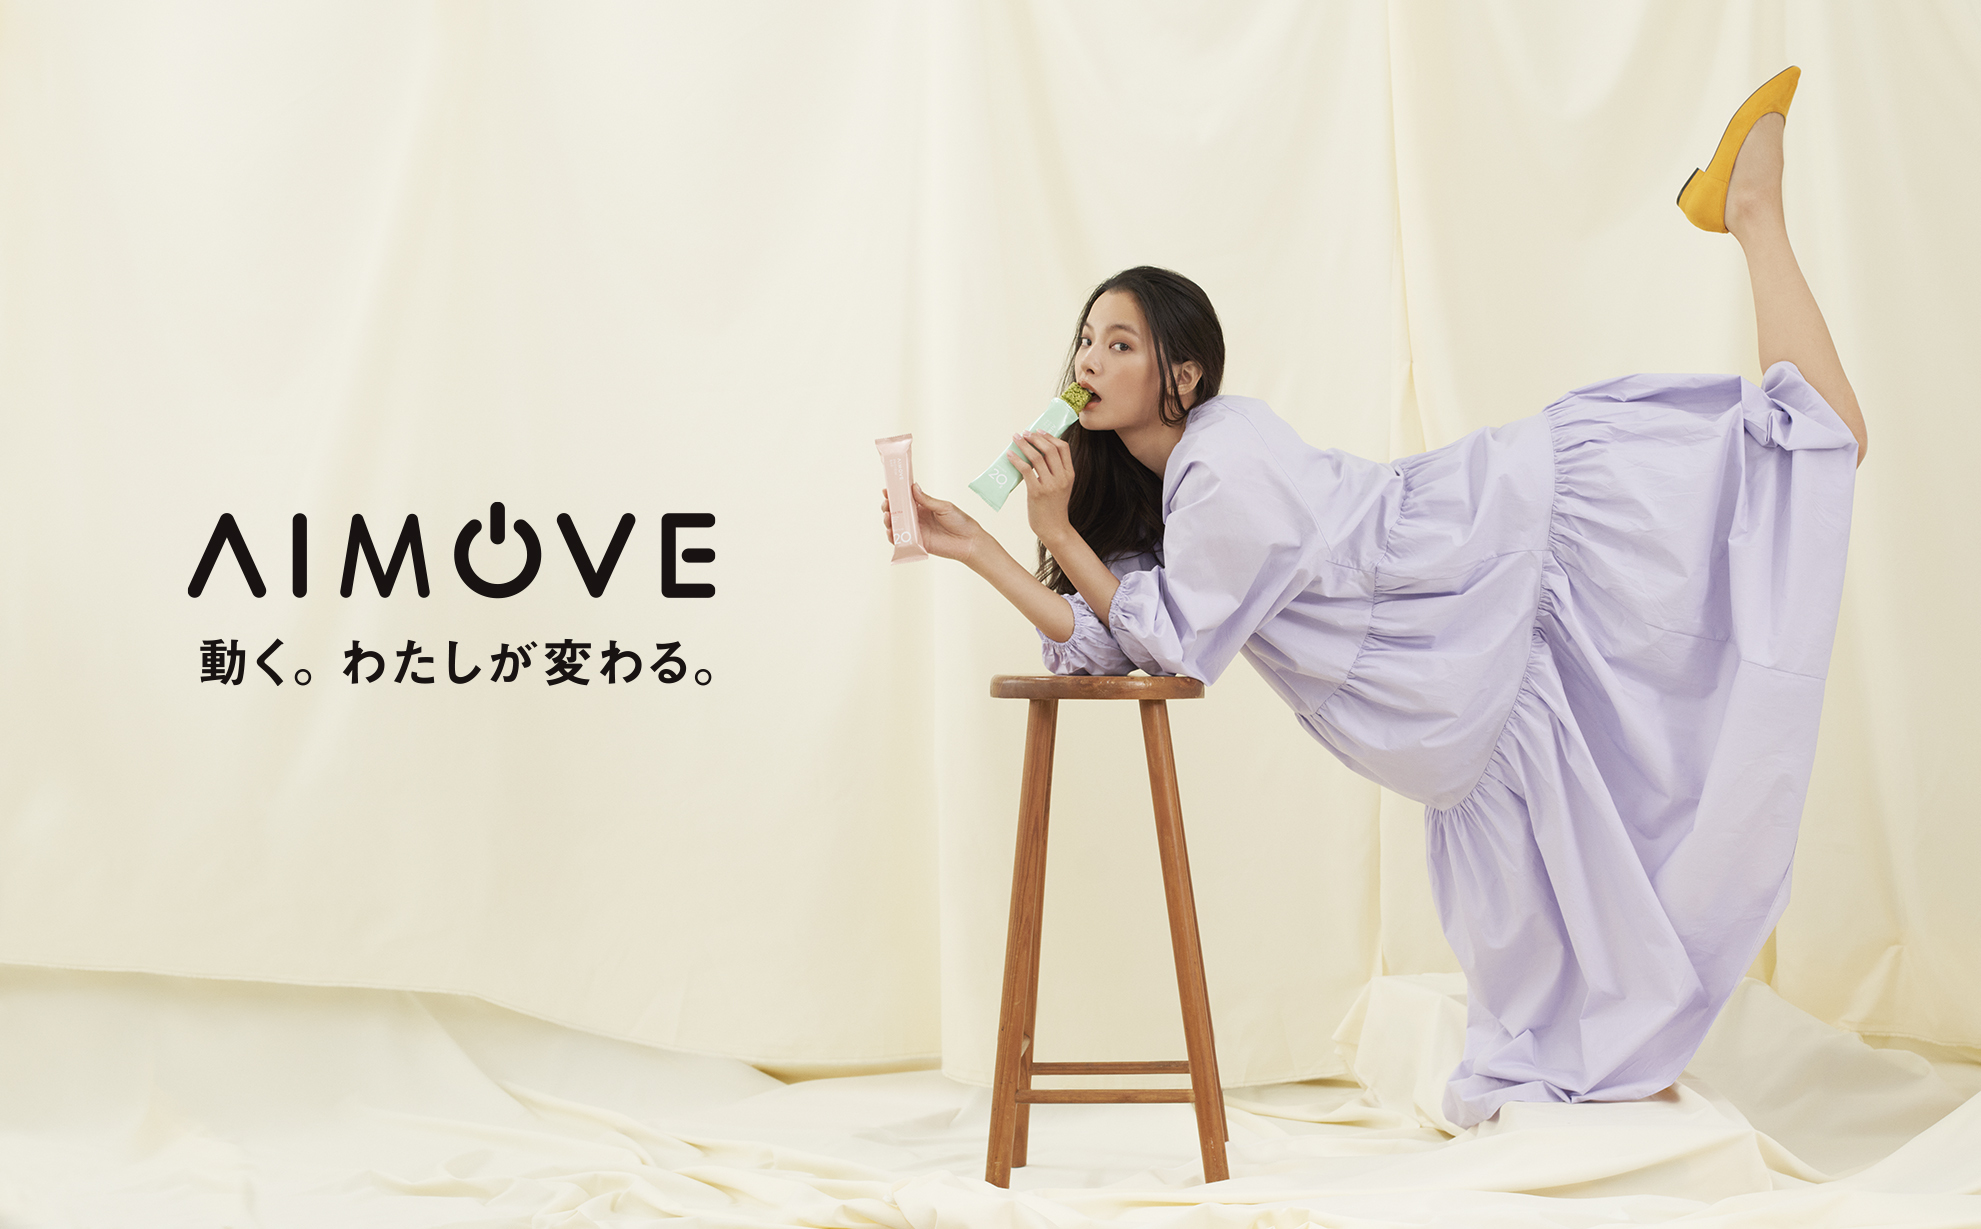 忙しい毎日を過ごす女性を応援する新ブランド Aimove エイムーブ プロテインバー 発売開始